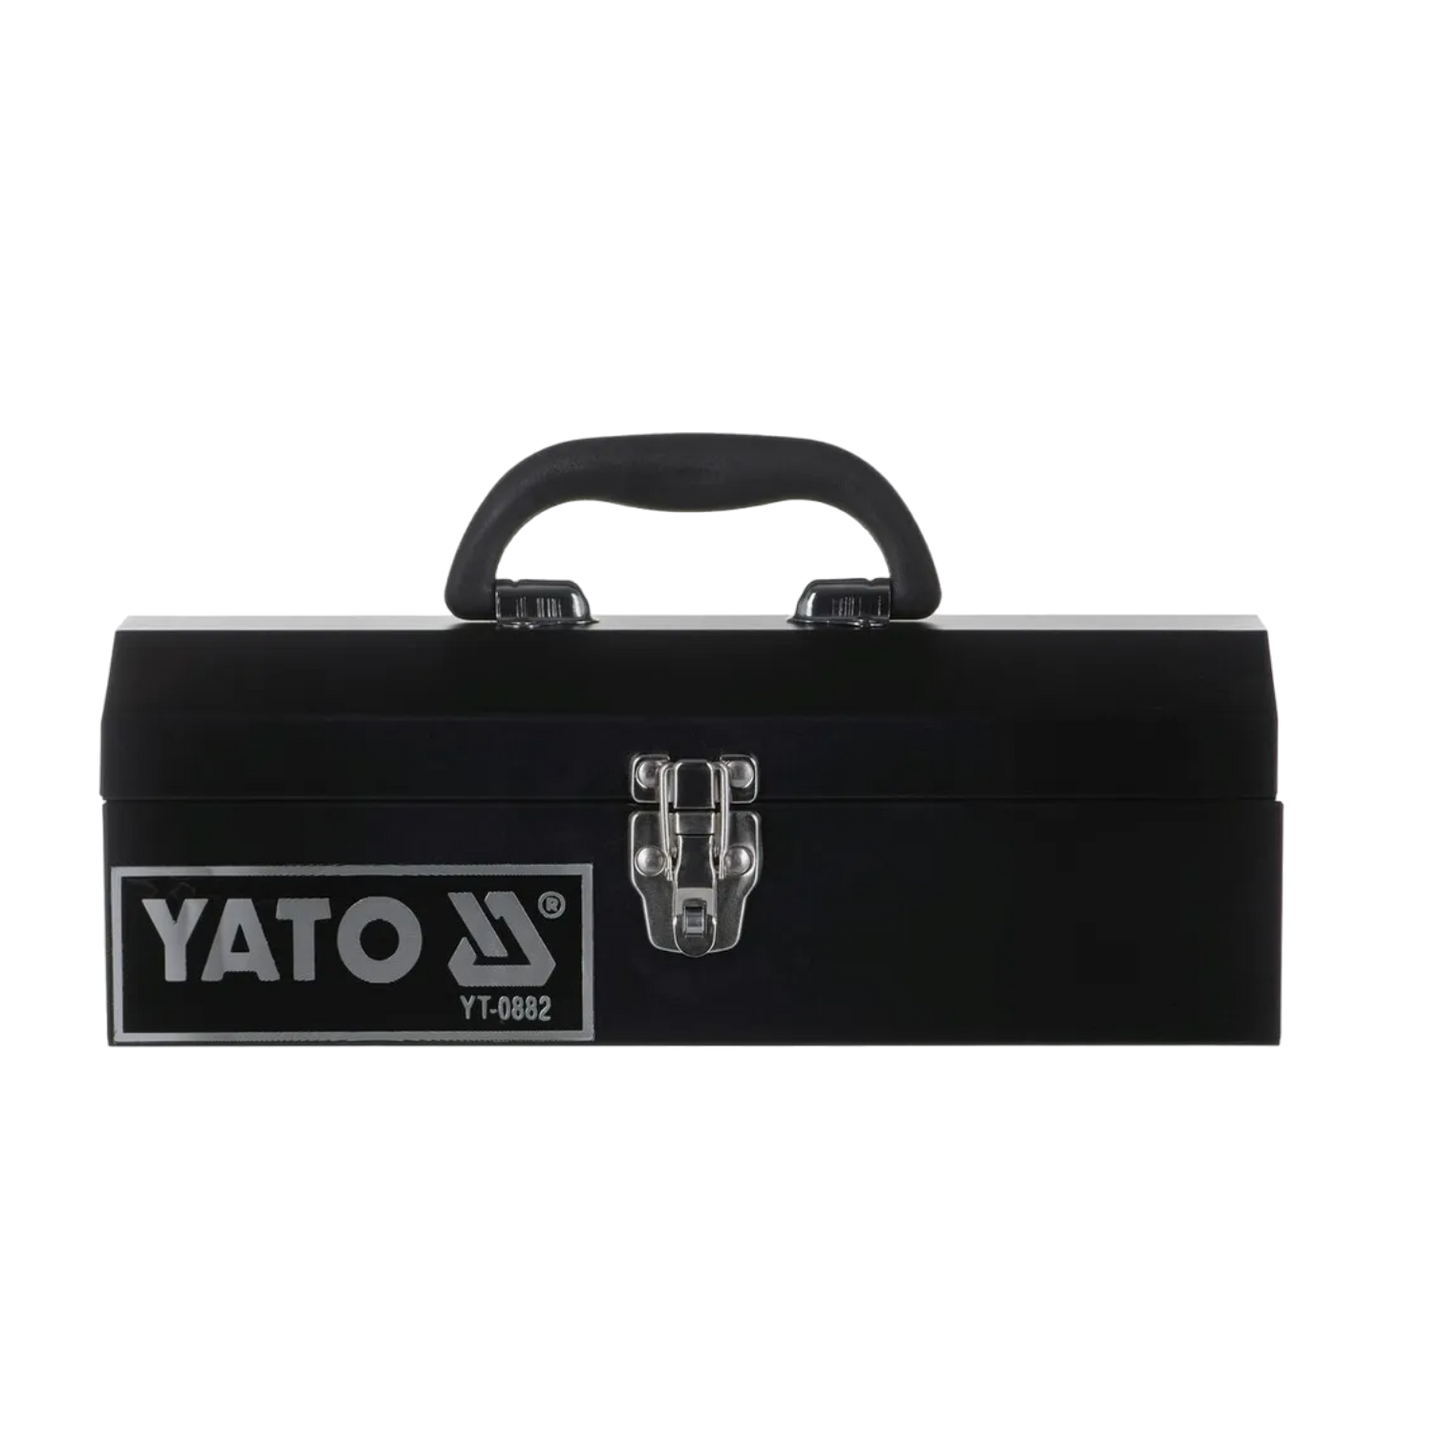 Yato Metall Werkzeugkasten - Schwarz, Werkzeugkoffer mit Schnellverschluss